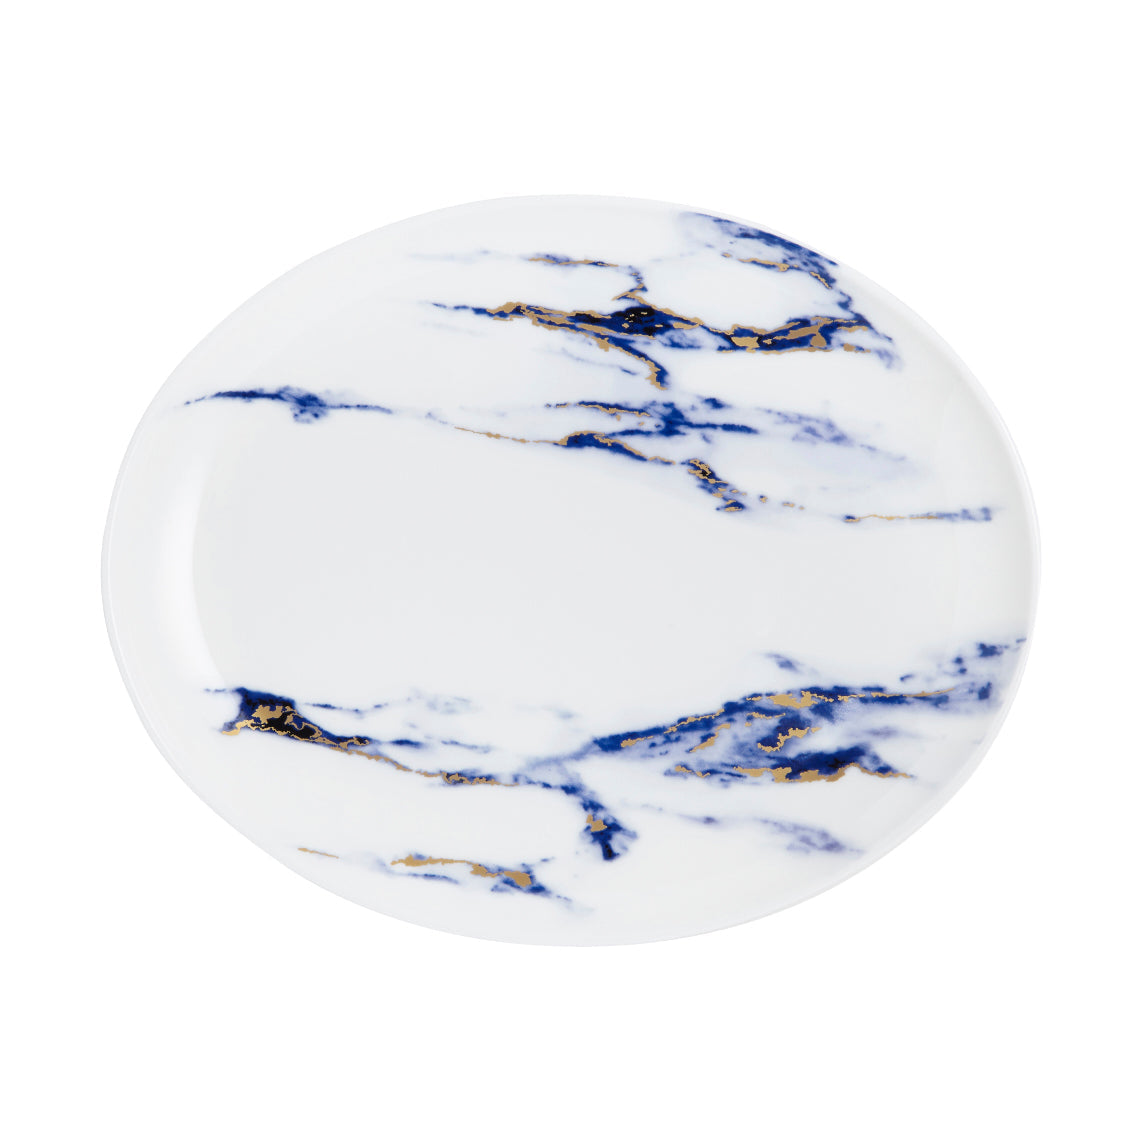 Prouna Marble Azure 12" Oval Platter White Background Photo